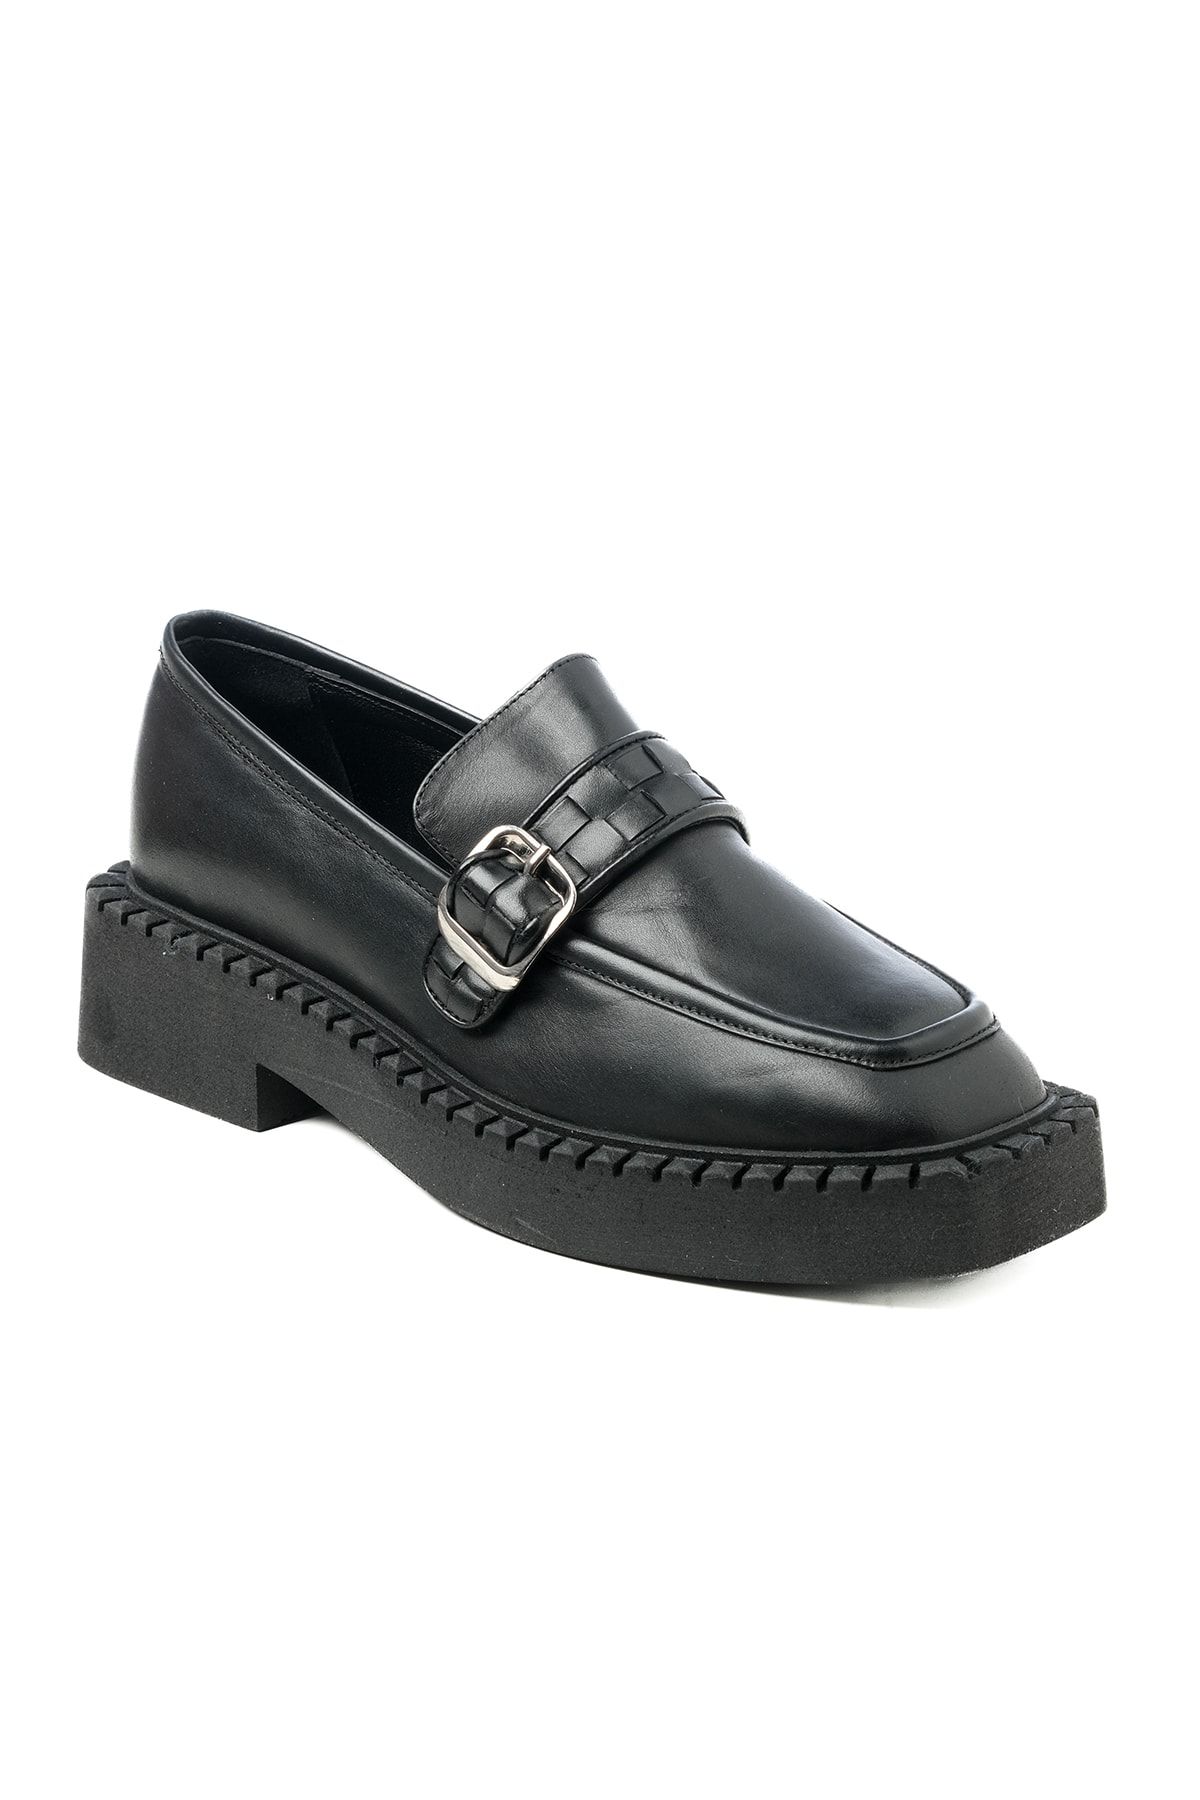 Giuseppe Mengoni Kadın Oxford/ayakkabı Pa-1031 771 360 Deri Siyah